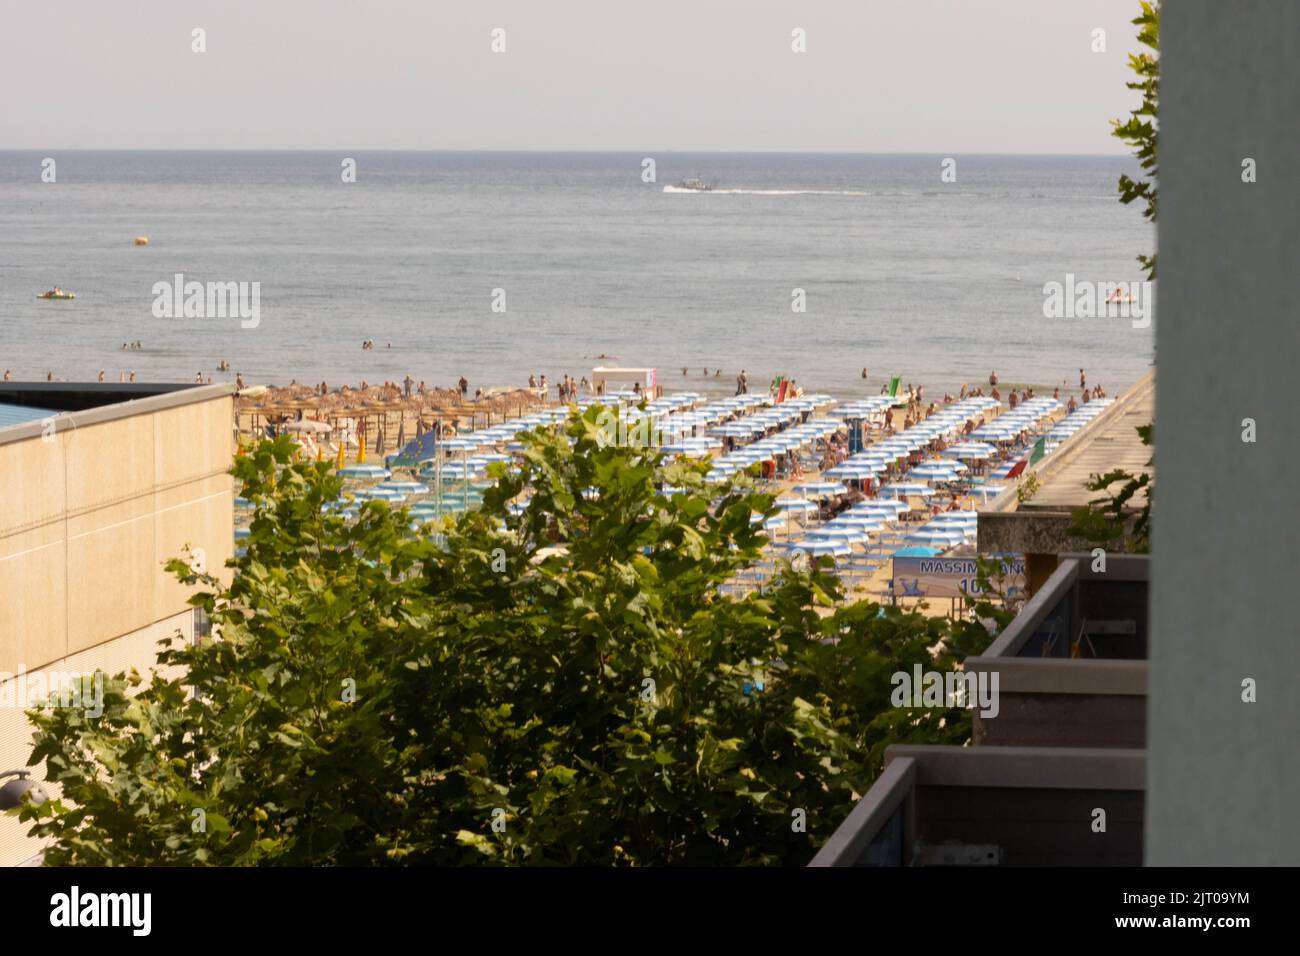 Plage avec bains en été. Rimini, Italie, photo de haute qualité Banque D'Images